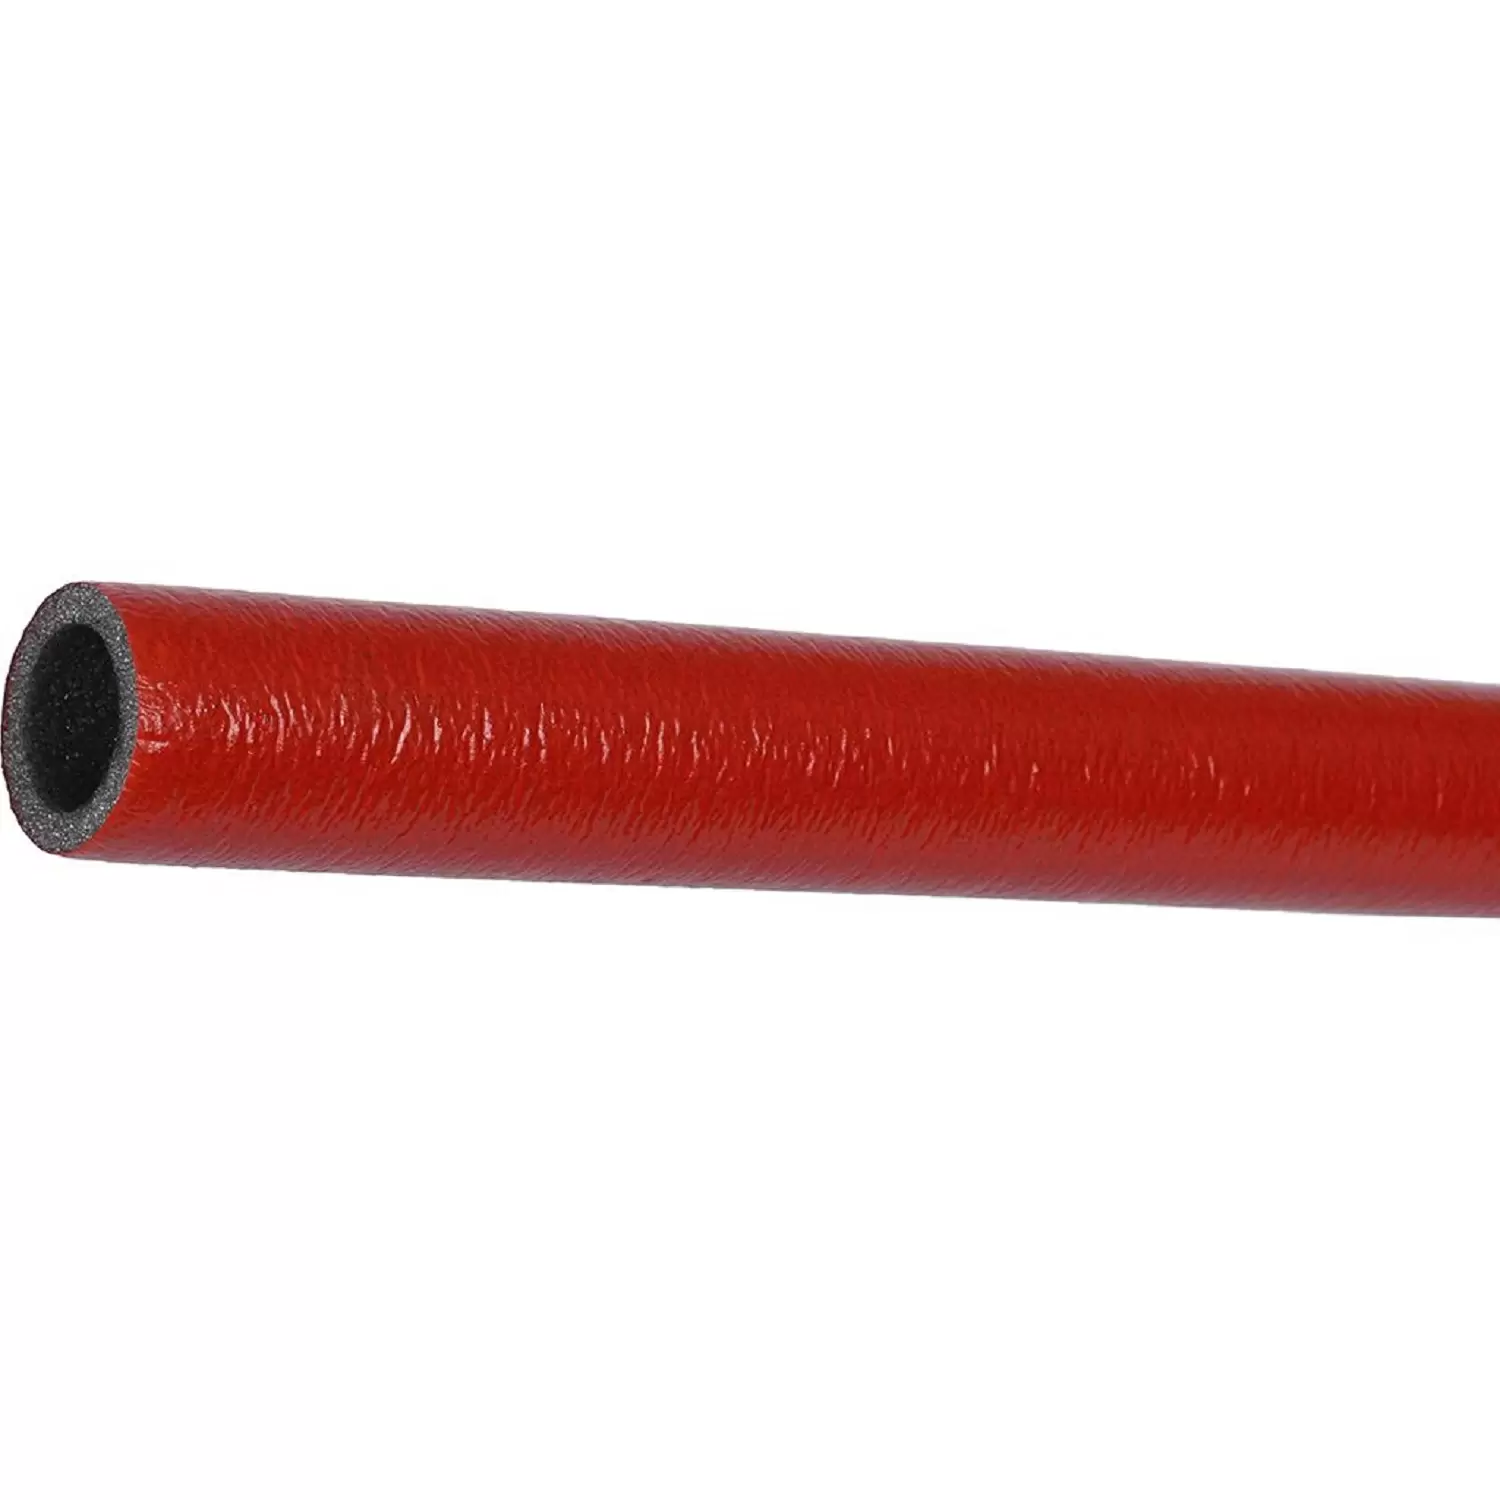 Теплоизоляция Энергофлекс супер протект 22/6 для труб диаметром 20 мм красная, трубка 2 м